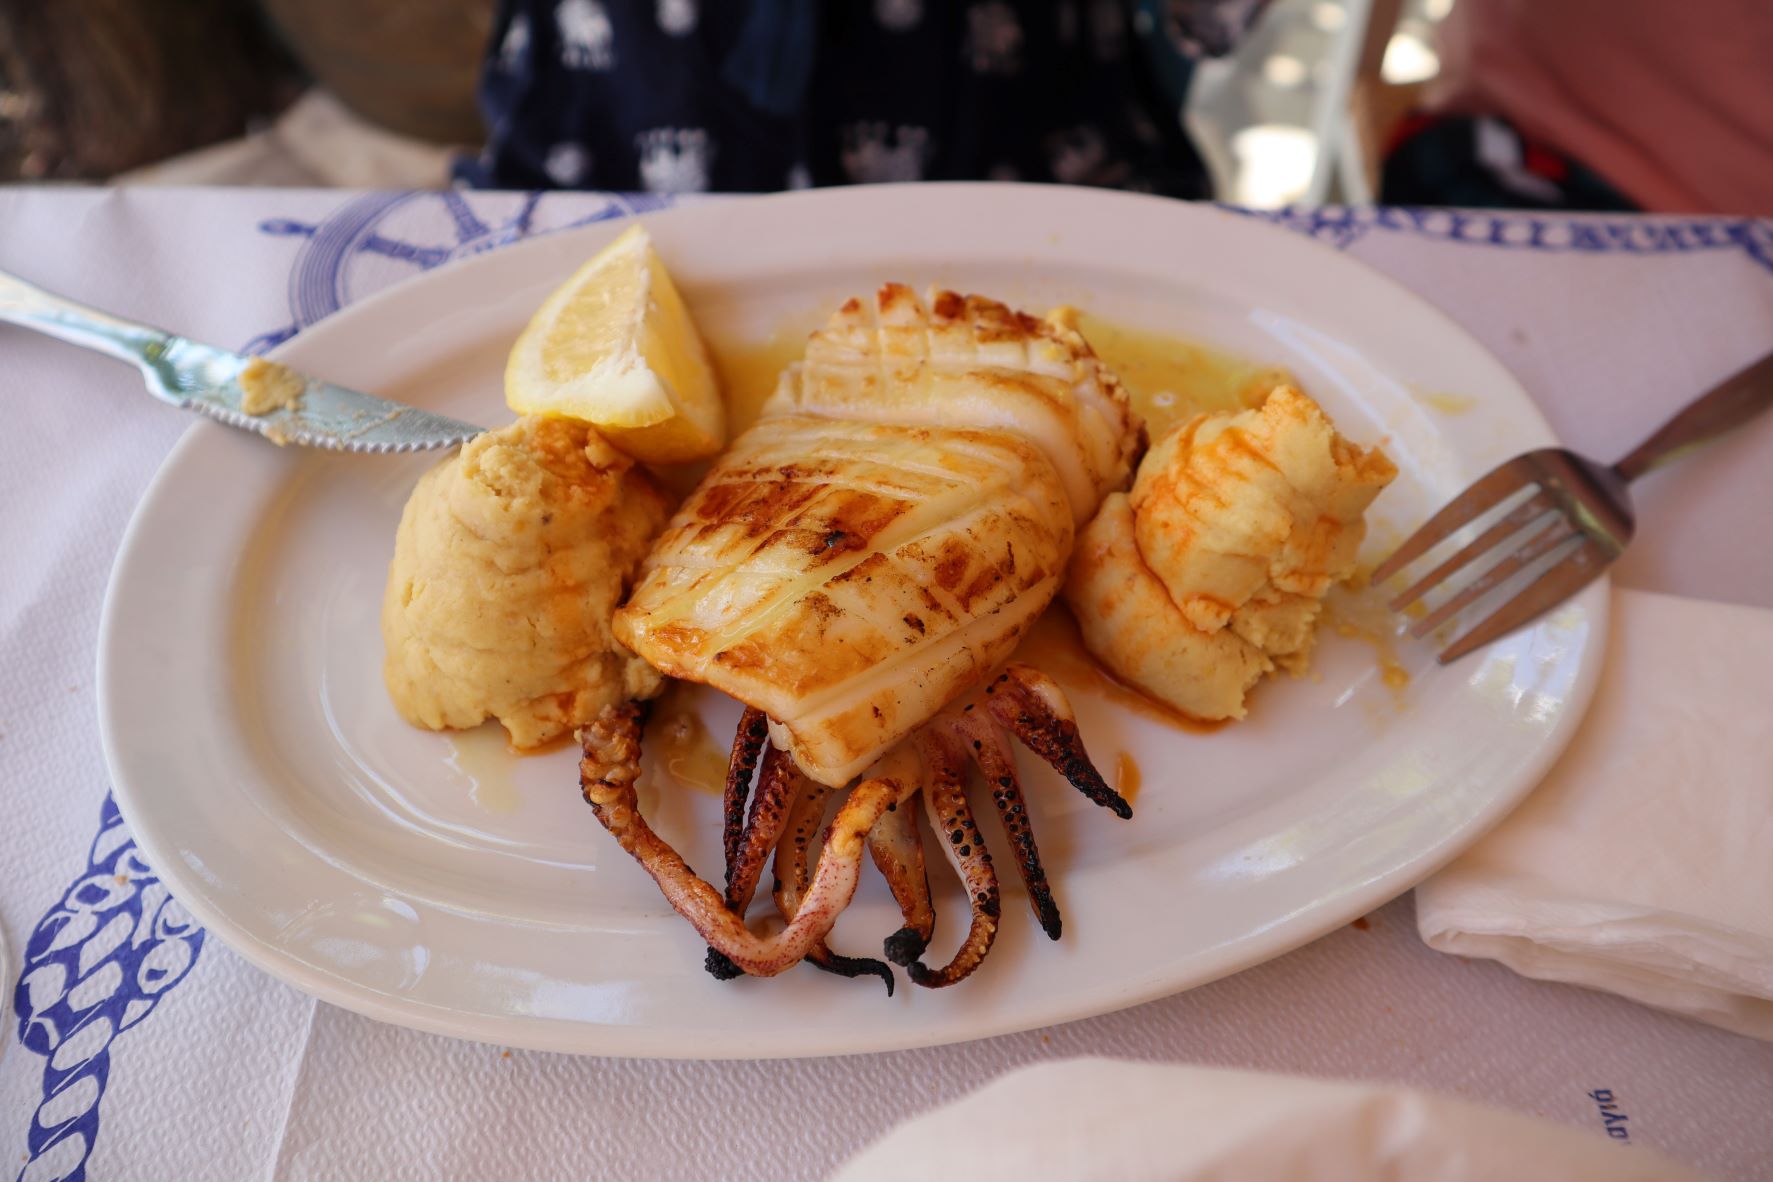 Lefkada food travel guide